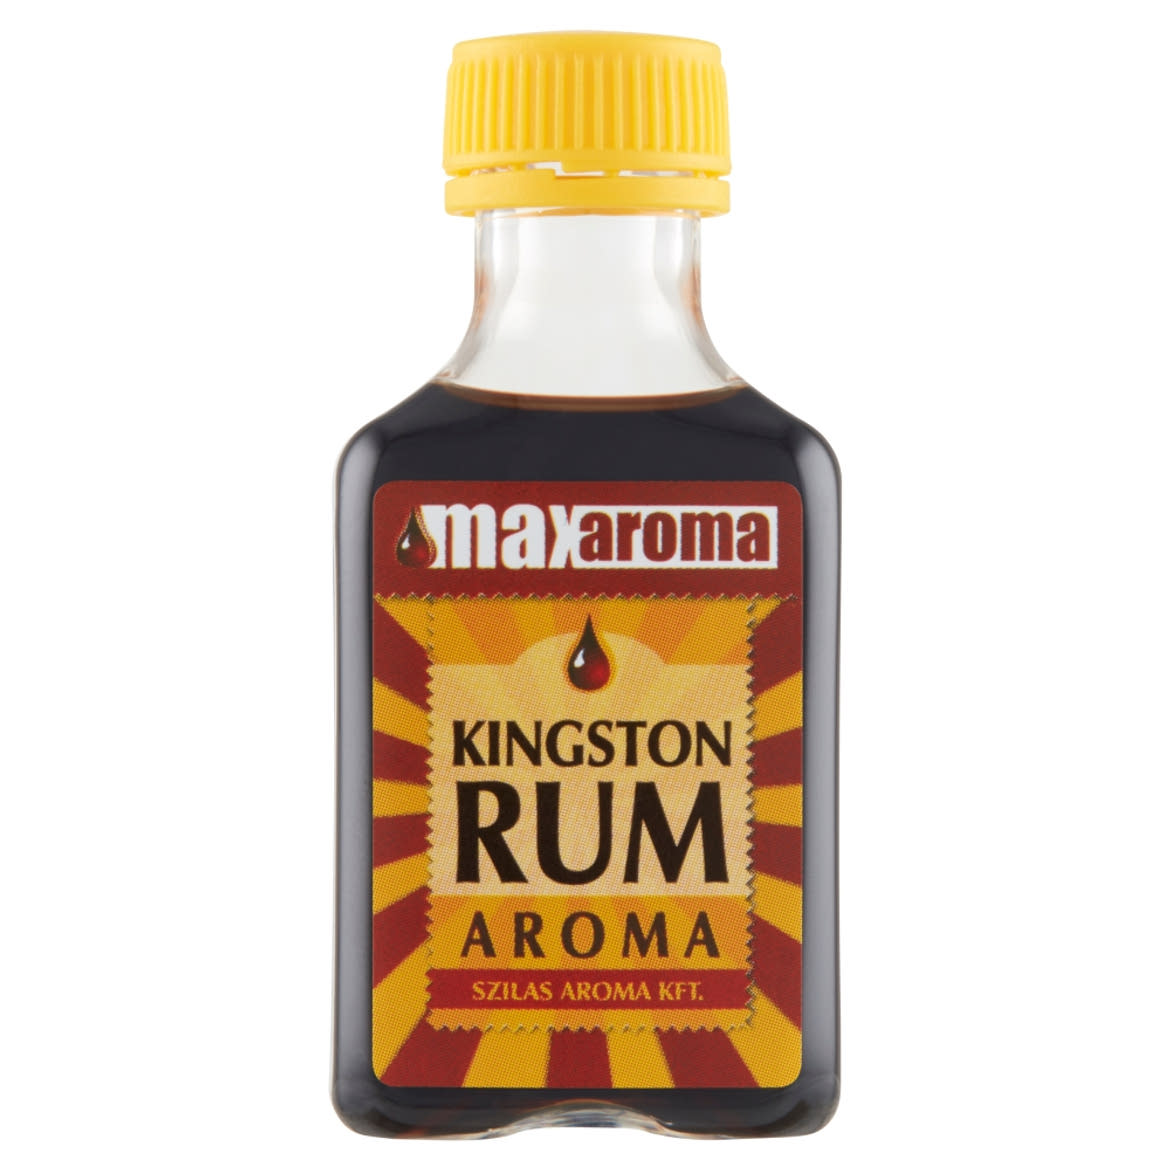 Max Aroma Kingston rum aroma